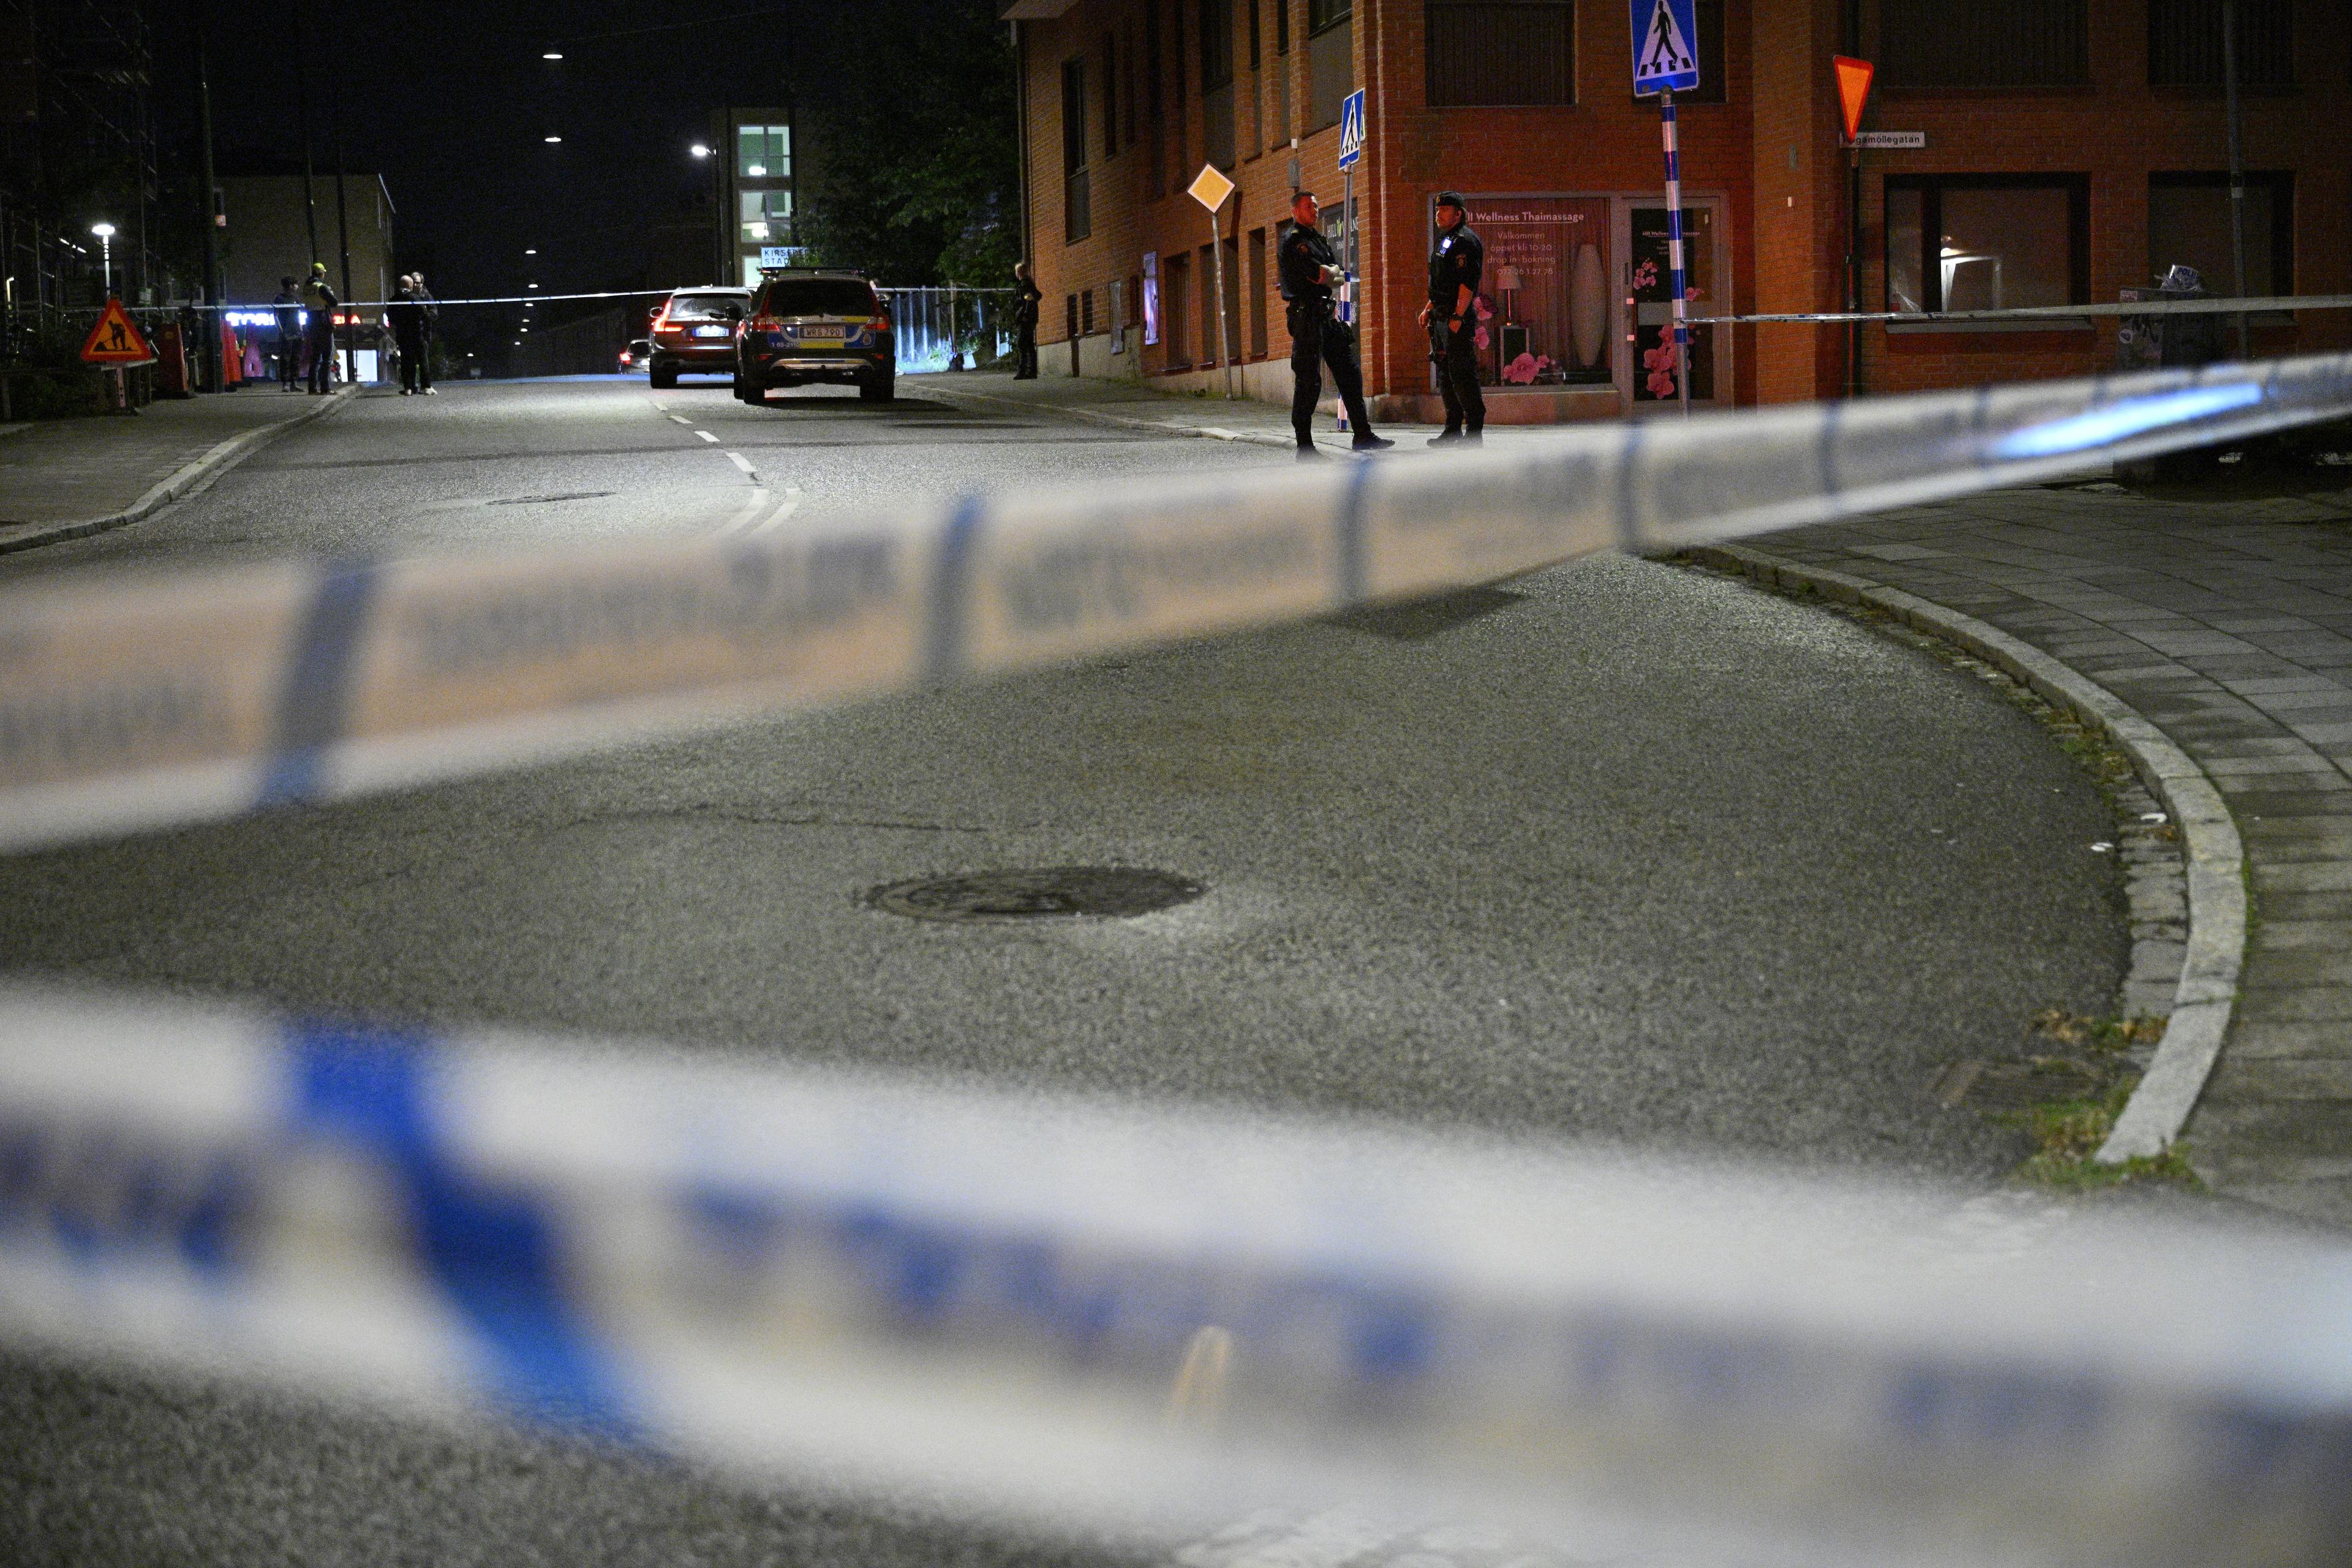 Polis på plats i Kirseberg i Malmö efter larm om en skottlossning. Foto: Johan Nilsson/TT